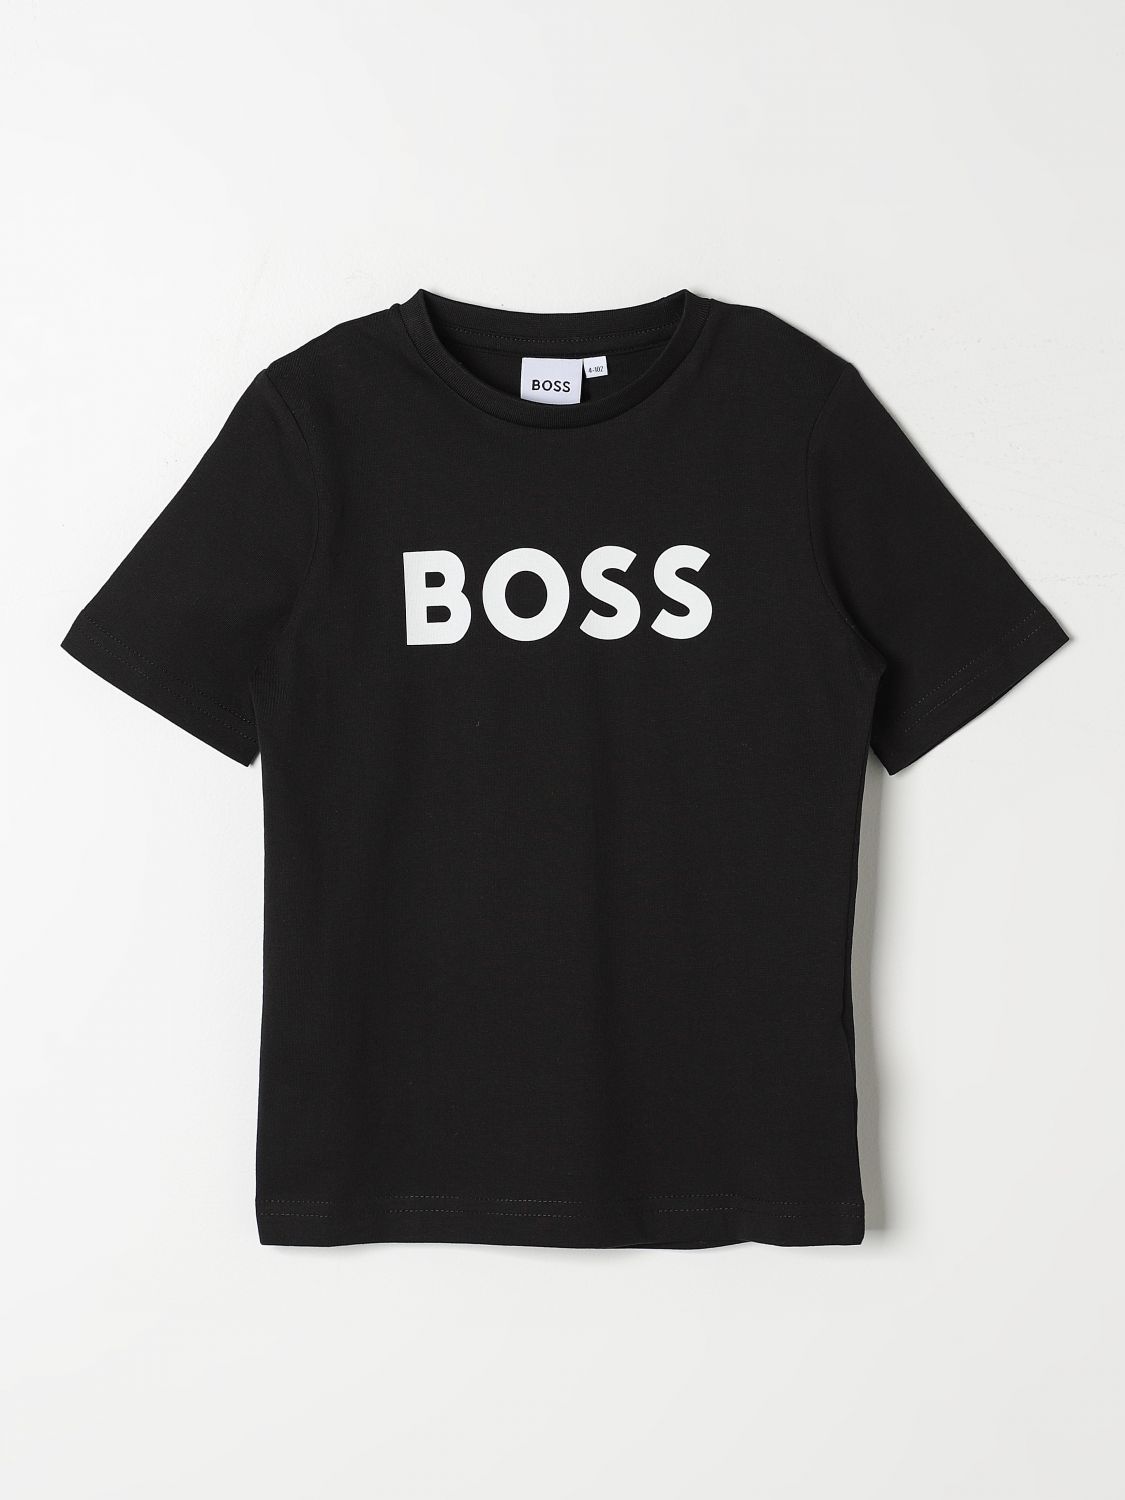 Bosswear T-shirt Boss Kidswear Kids Color Black